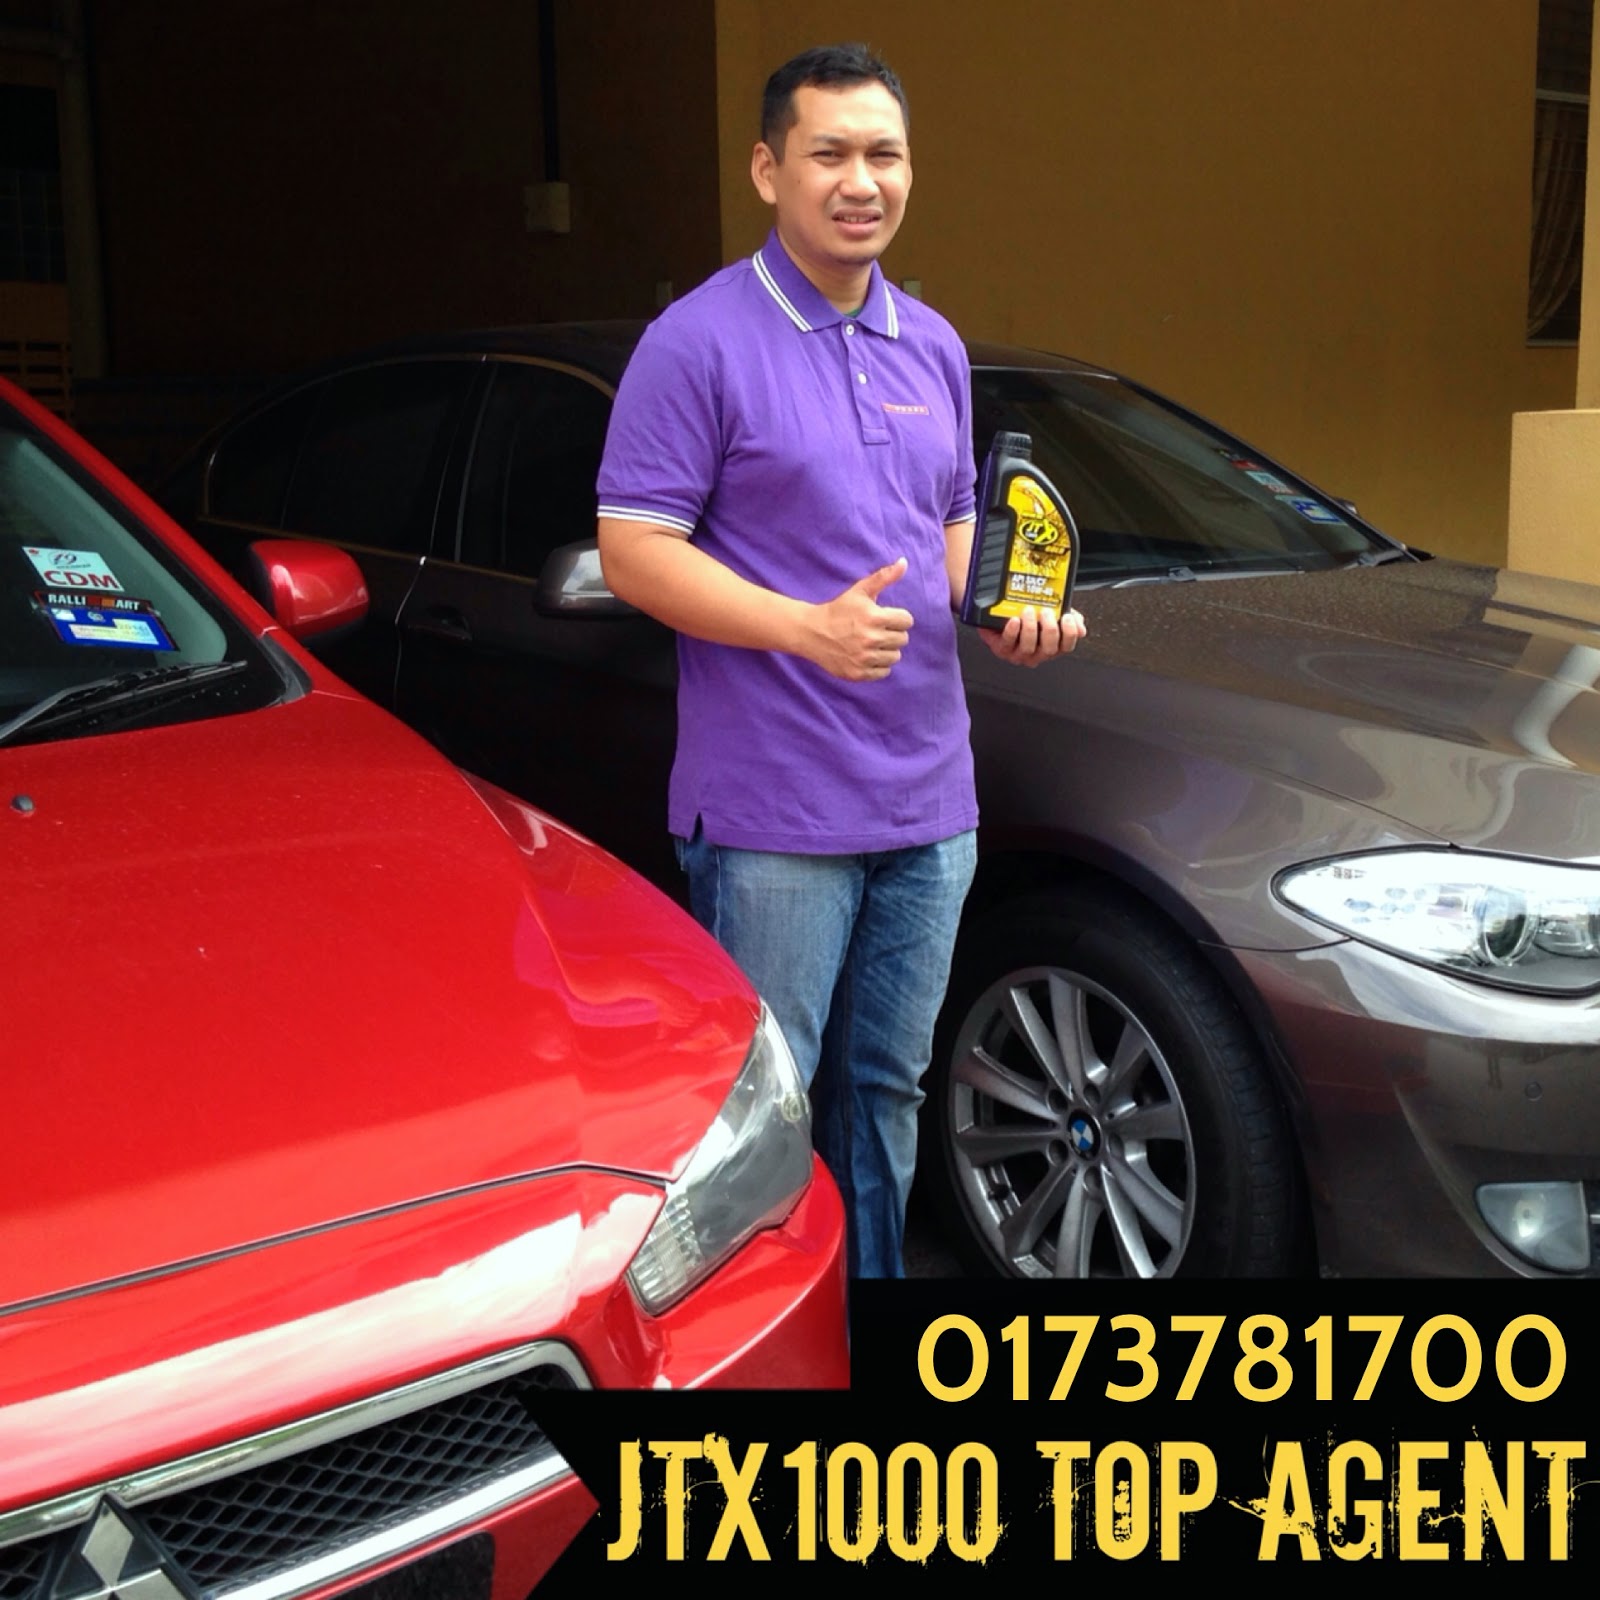 JTX 1000 Gold Airtracker Top Agent : JTX Airtracker Top 